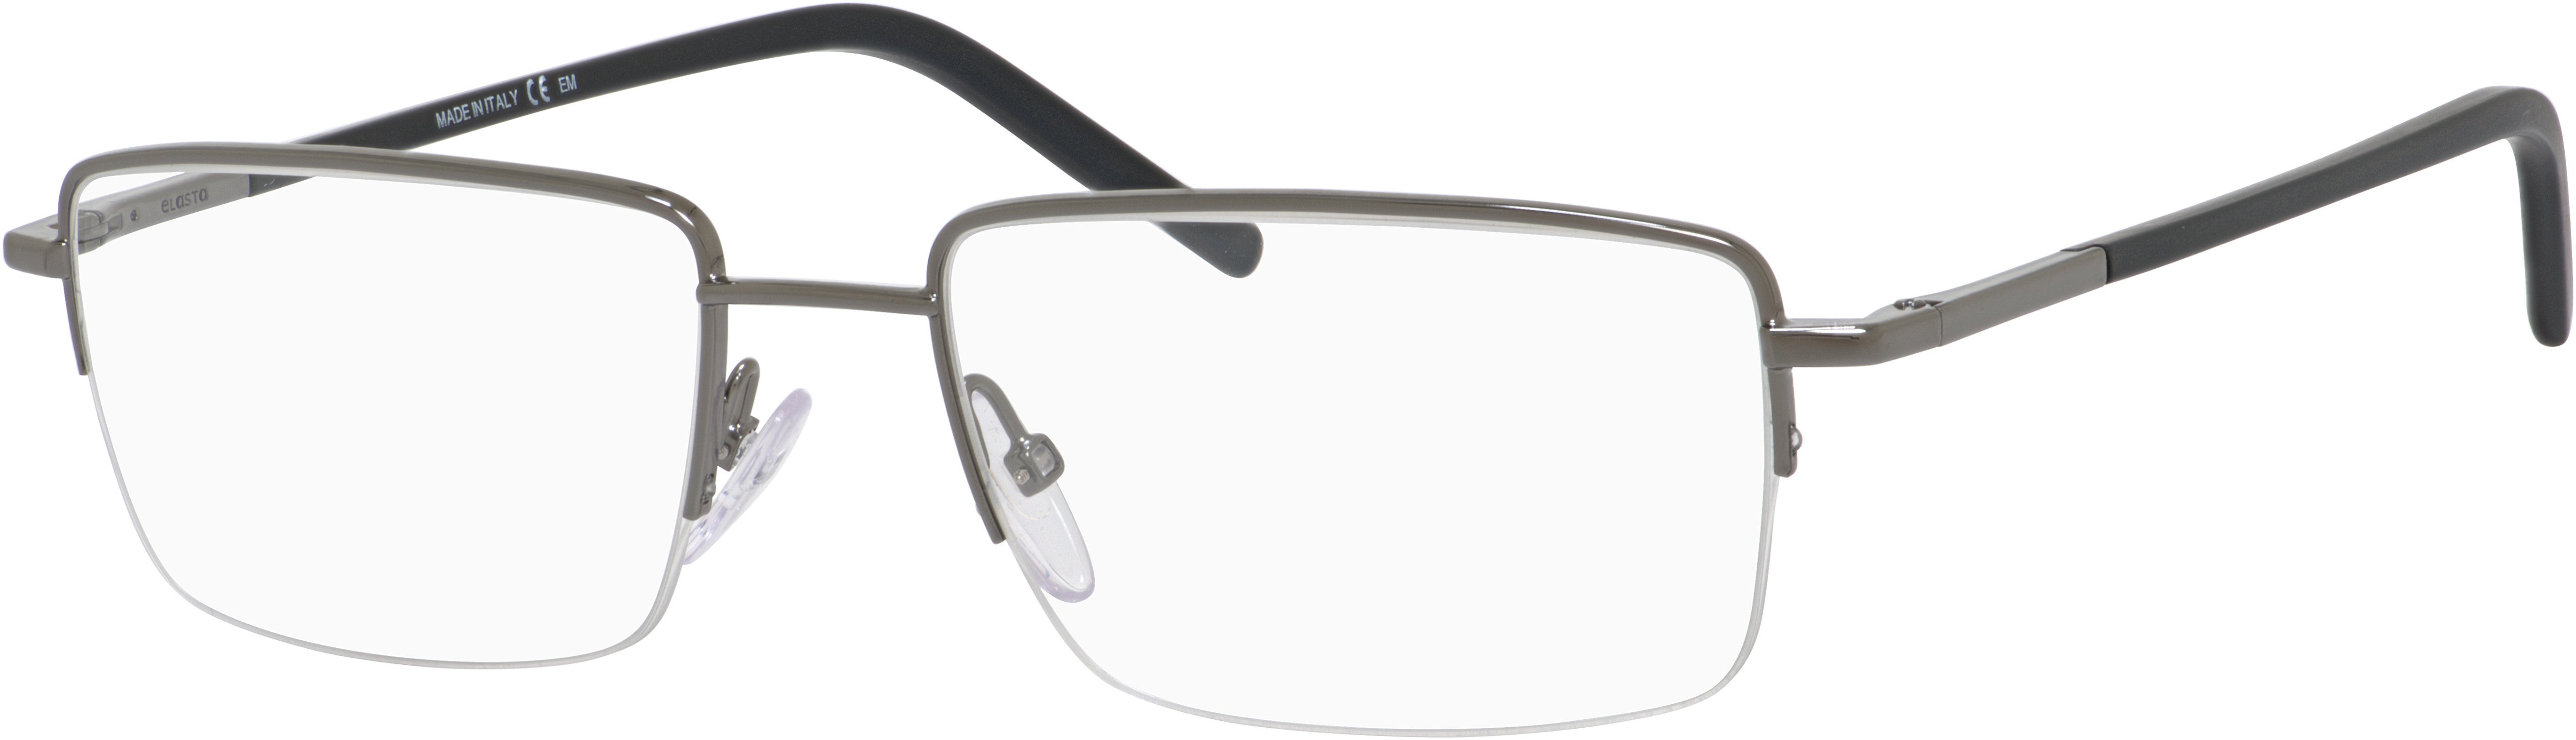  Elasta 7219 Rectangular Eyeglasses 0KJ1-0KJ1  Dark Ruthenium (00 Demo Lens)